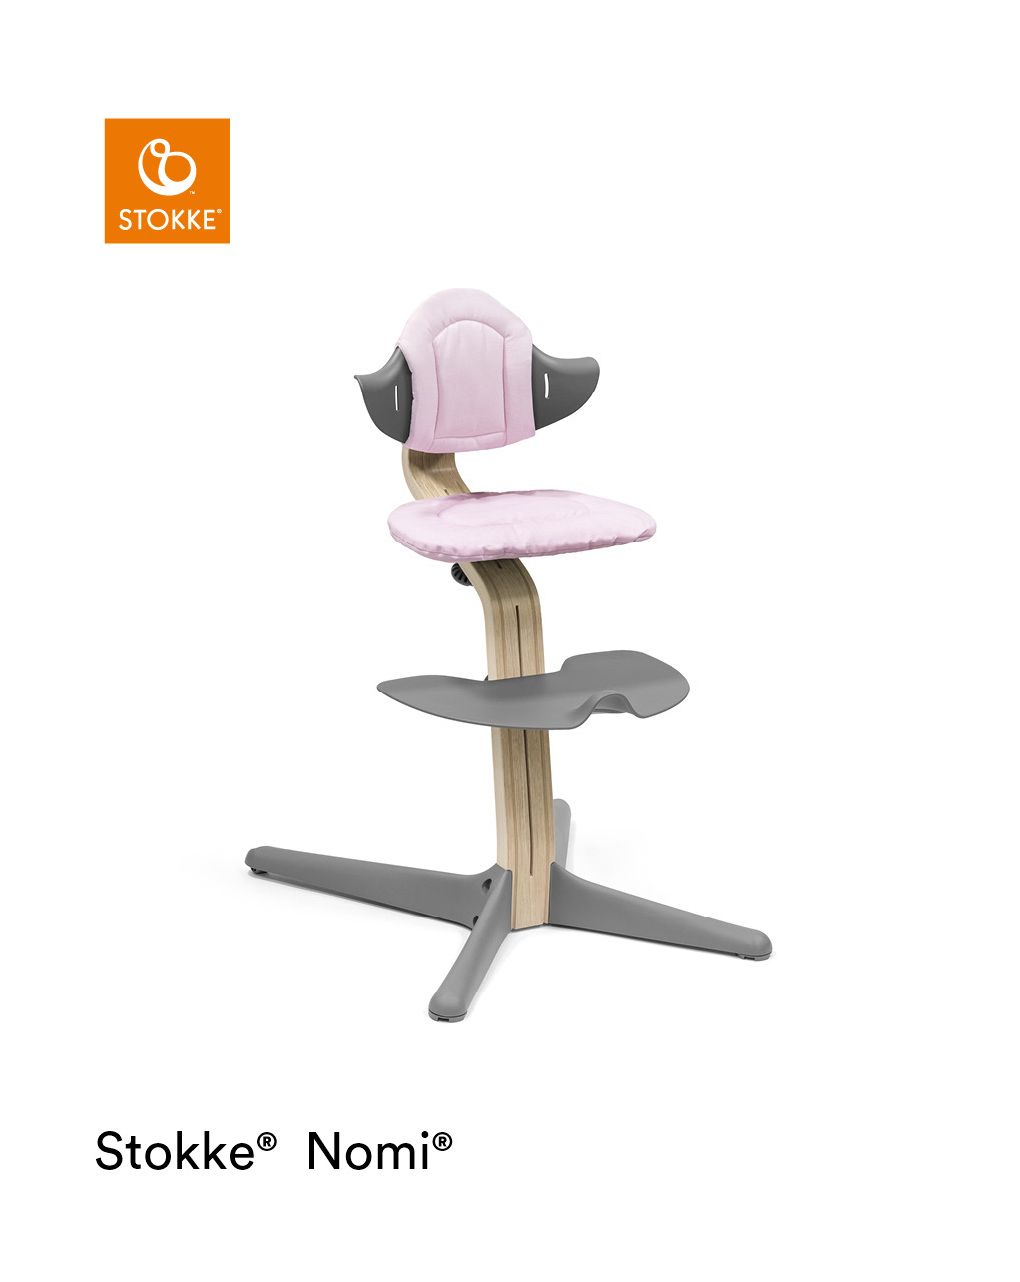 Cojín para silla nomi® grey pink - stokke - Stokke